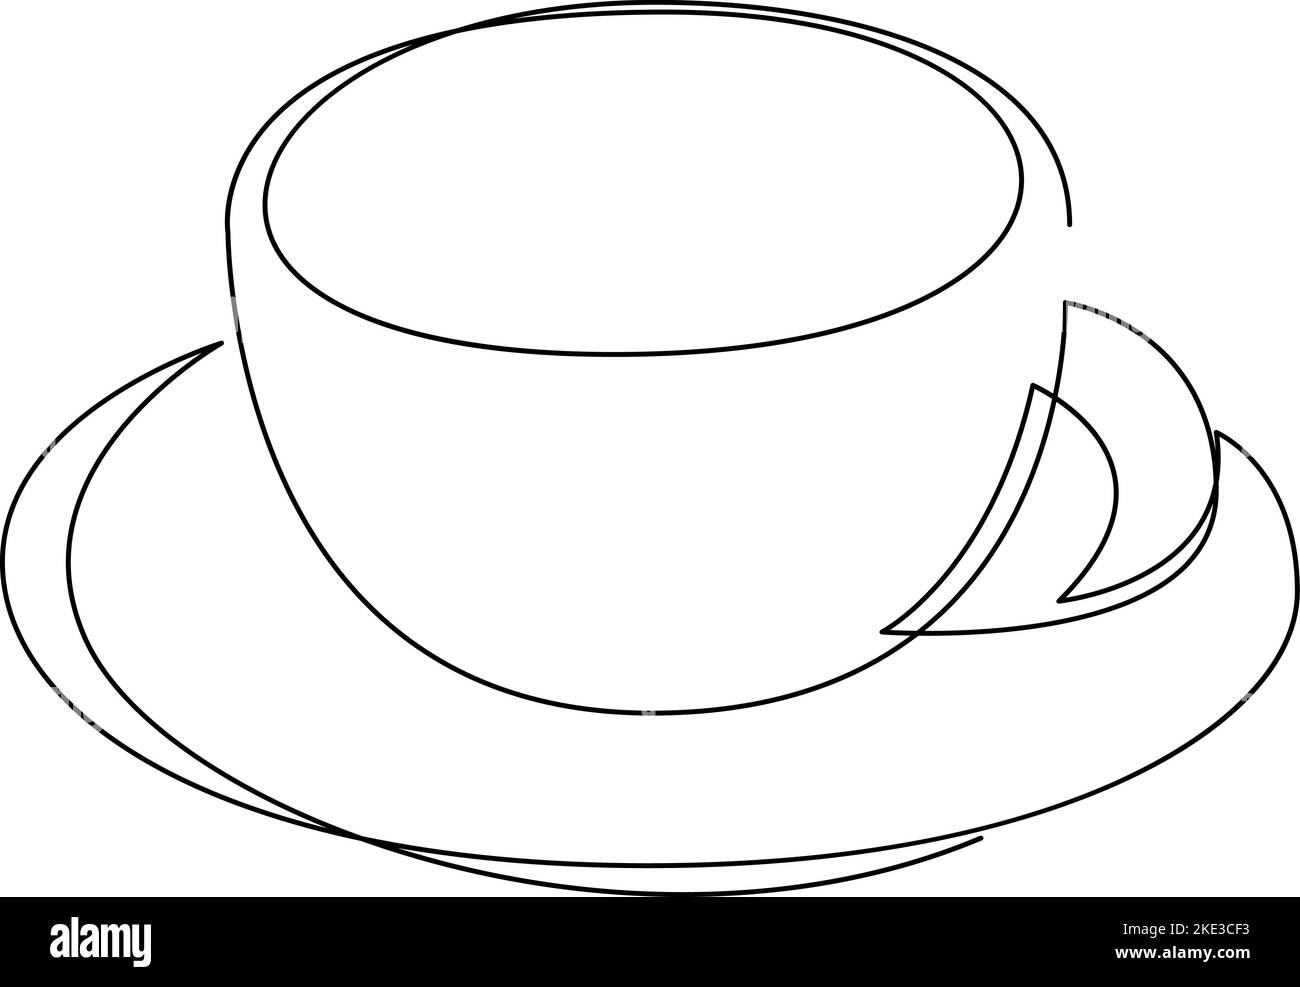 Disegno in linea continua di una tazza di caffè su un piatto per etichetta con logo. Emblema del negozio di tè. Moderna illustrazione vettoriale con disegno a una linea Illustrazione Vettoriale